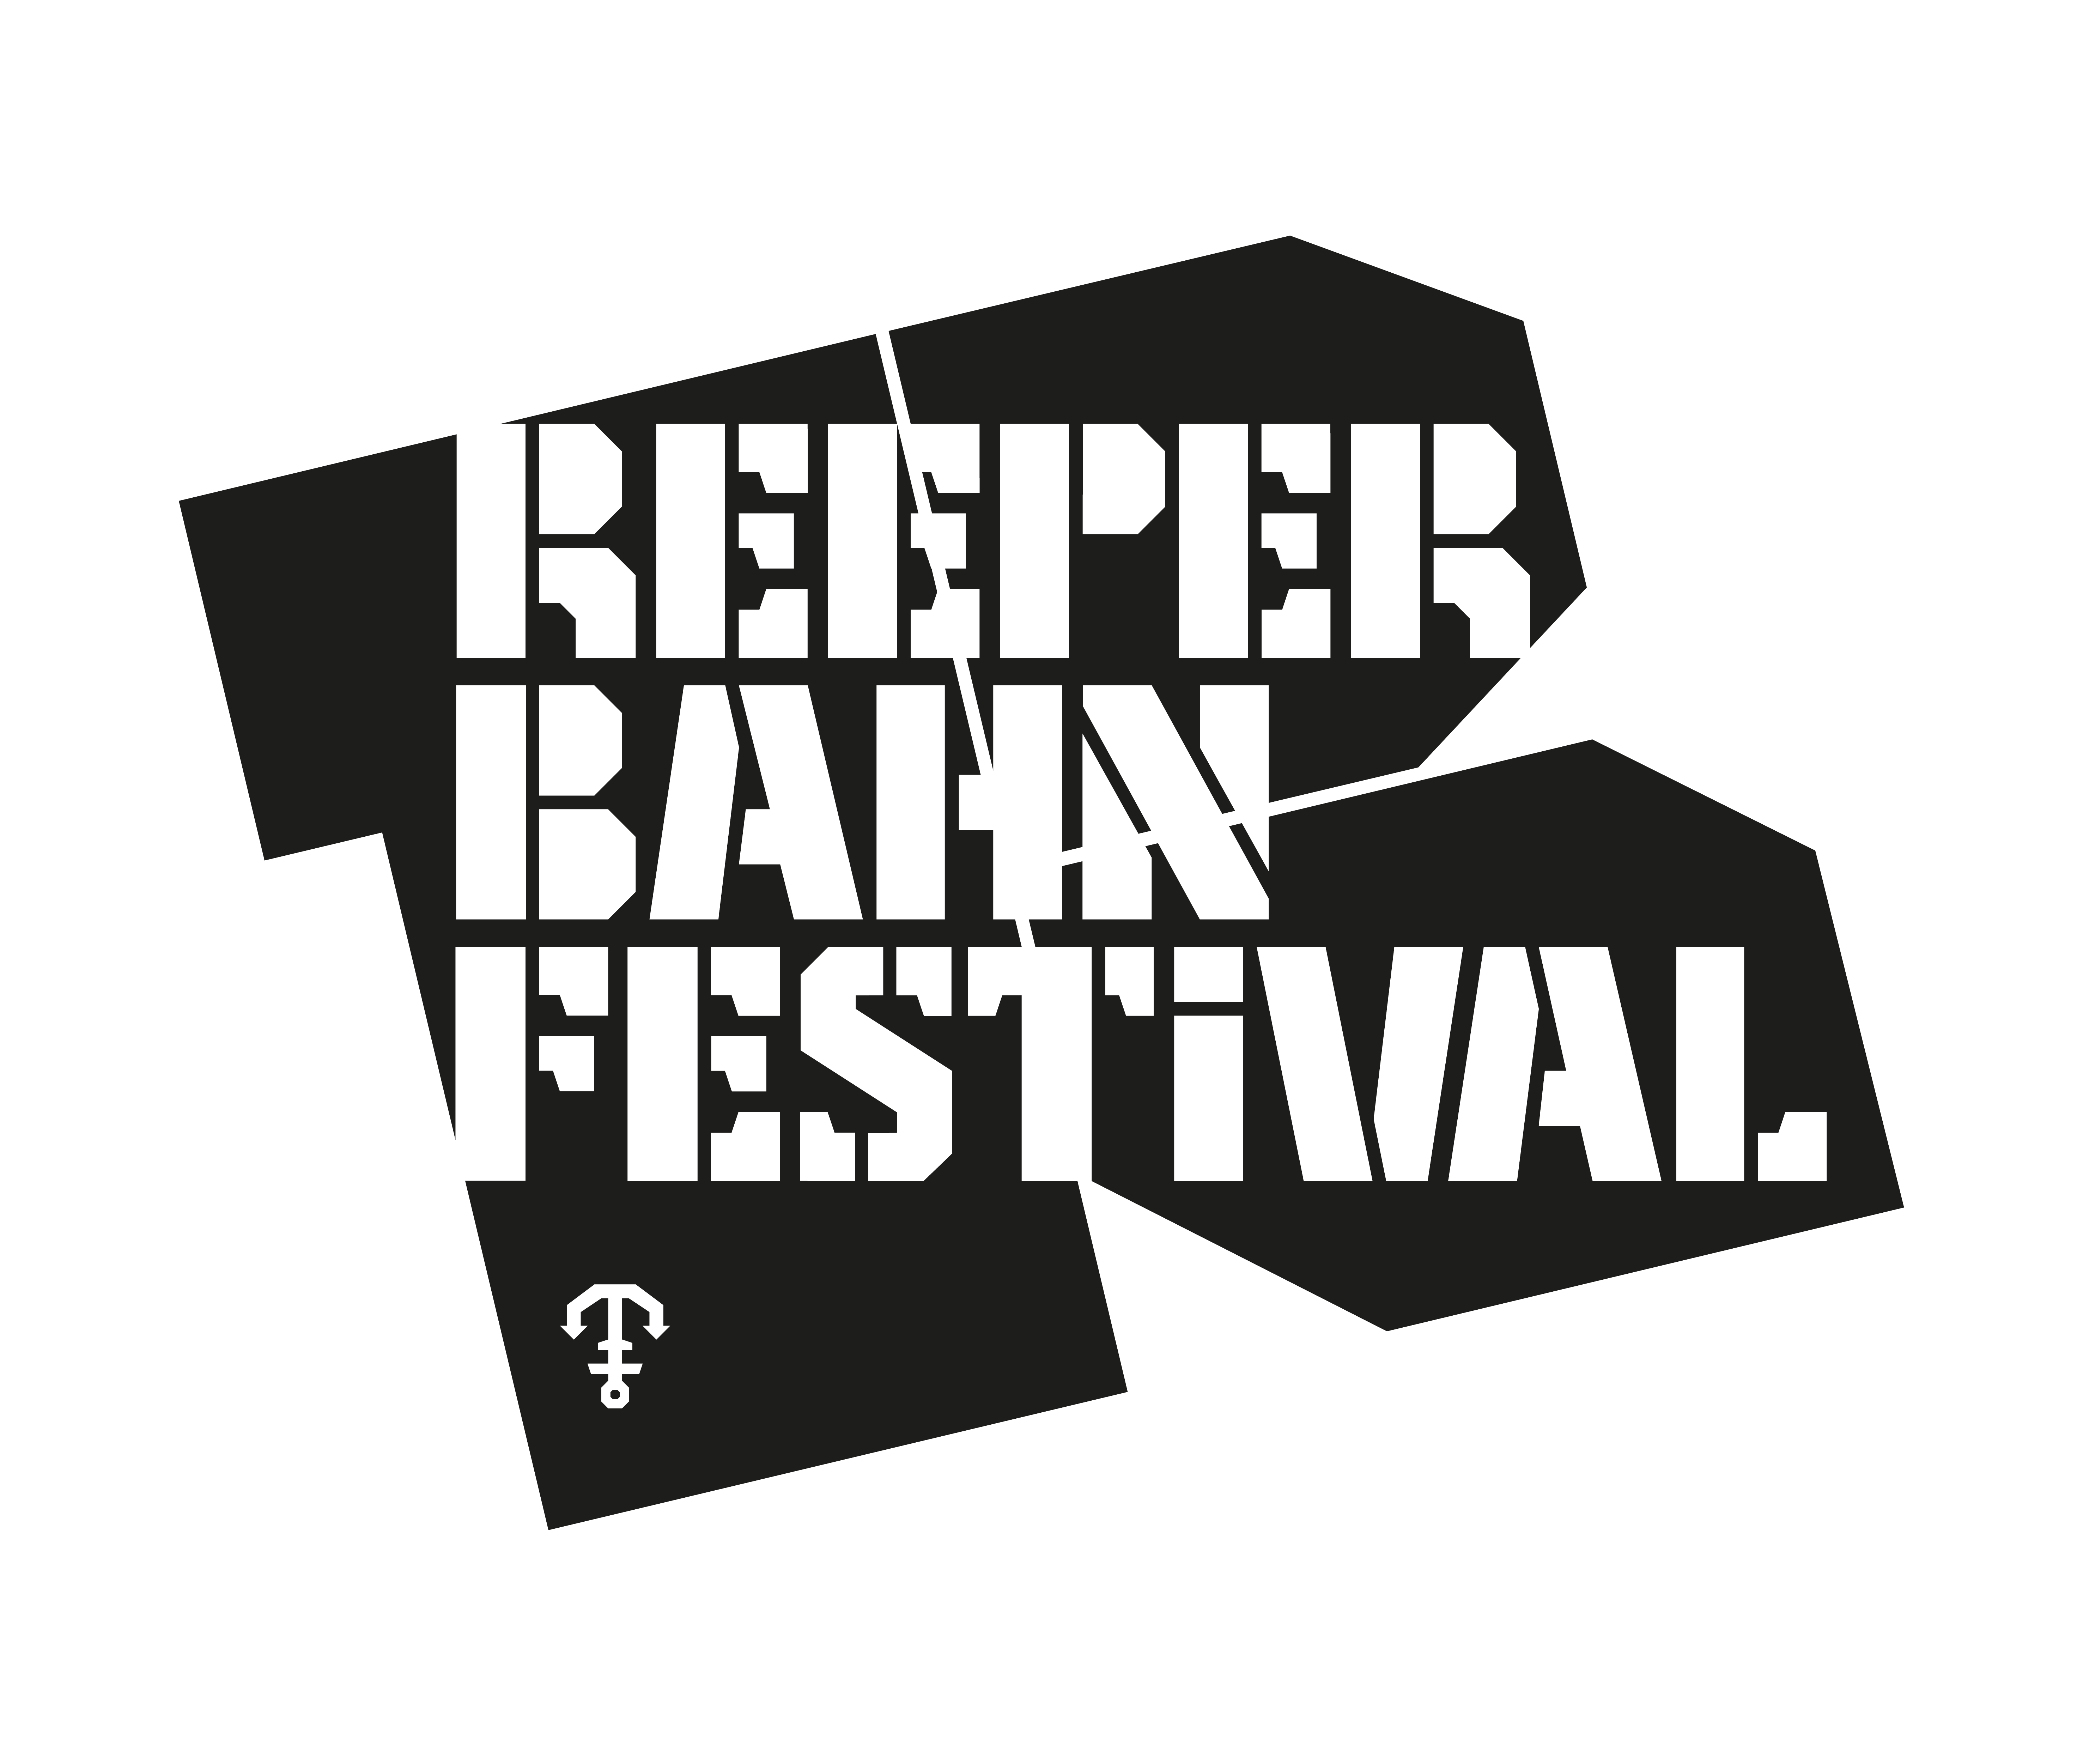 Logo_Reeperbahn_Festival_2014